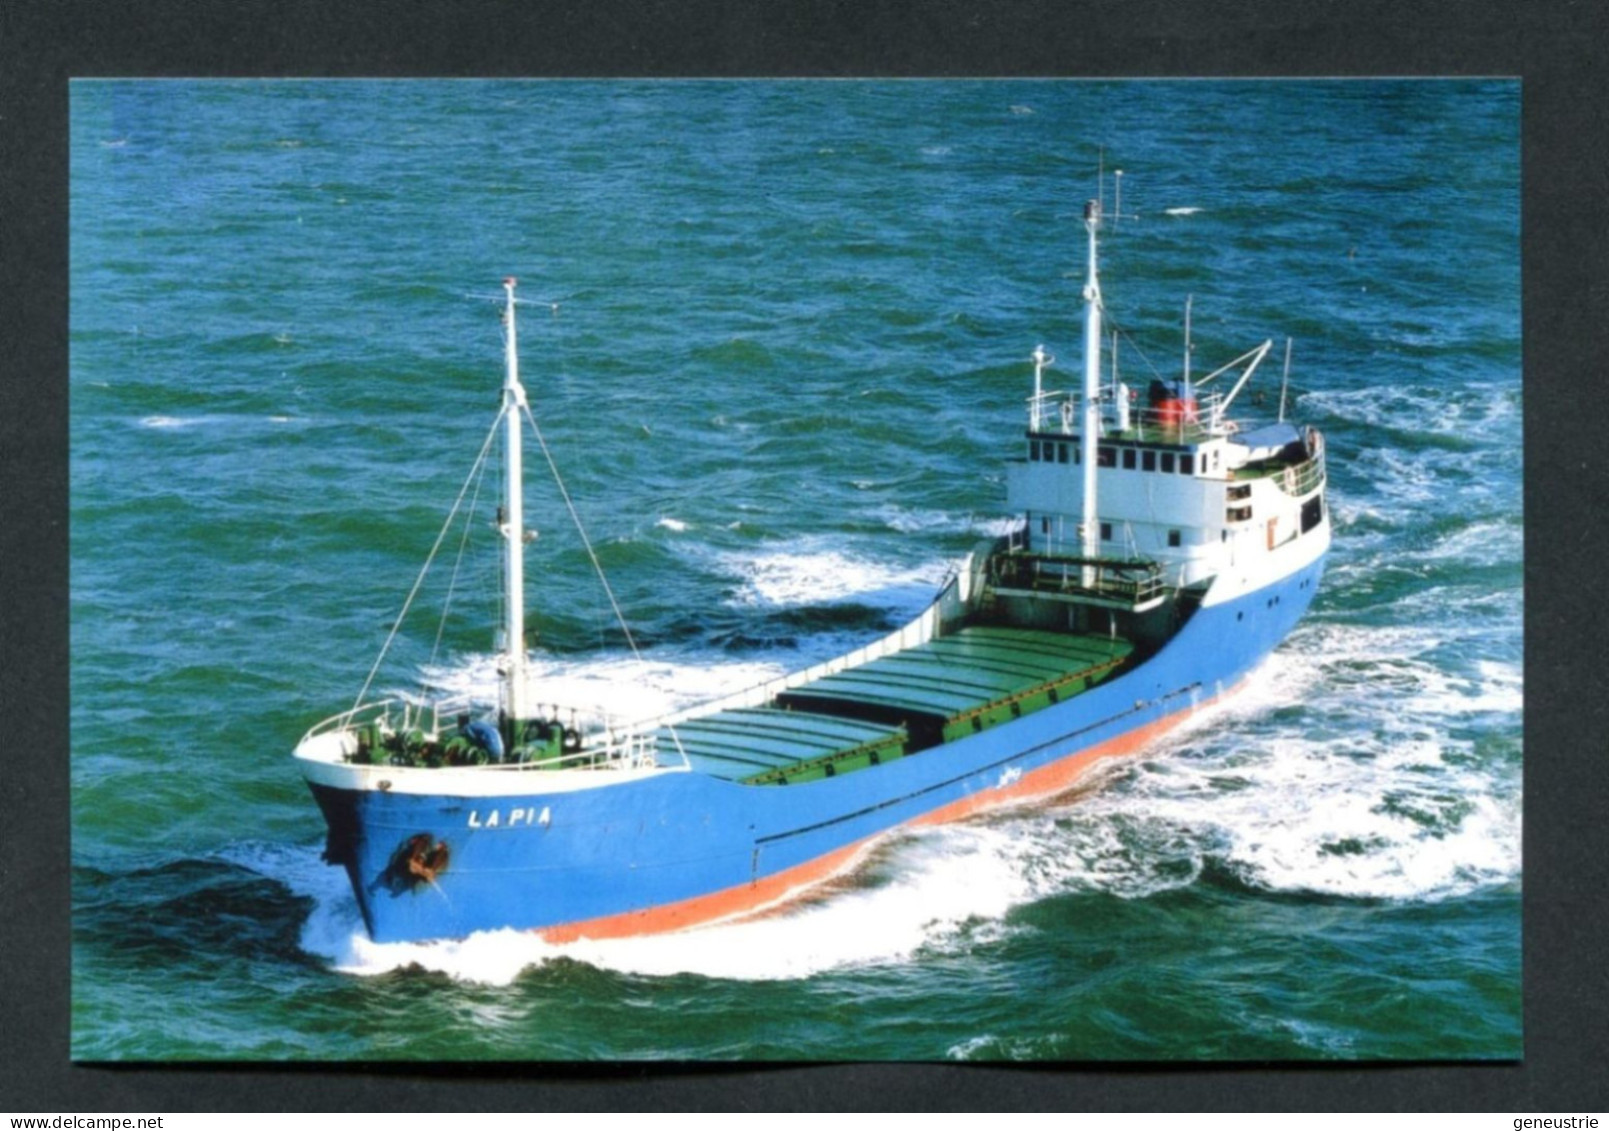 Carte-photo Moderne - Cargo " La Pia " Vers 1995 Au Large D'Aurigny (Alderney)" Normandie - Commerce